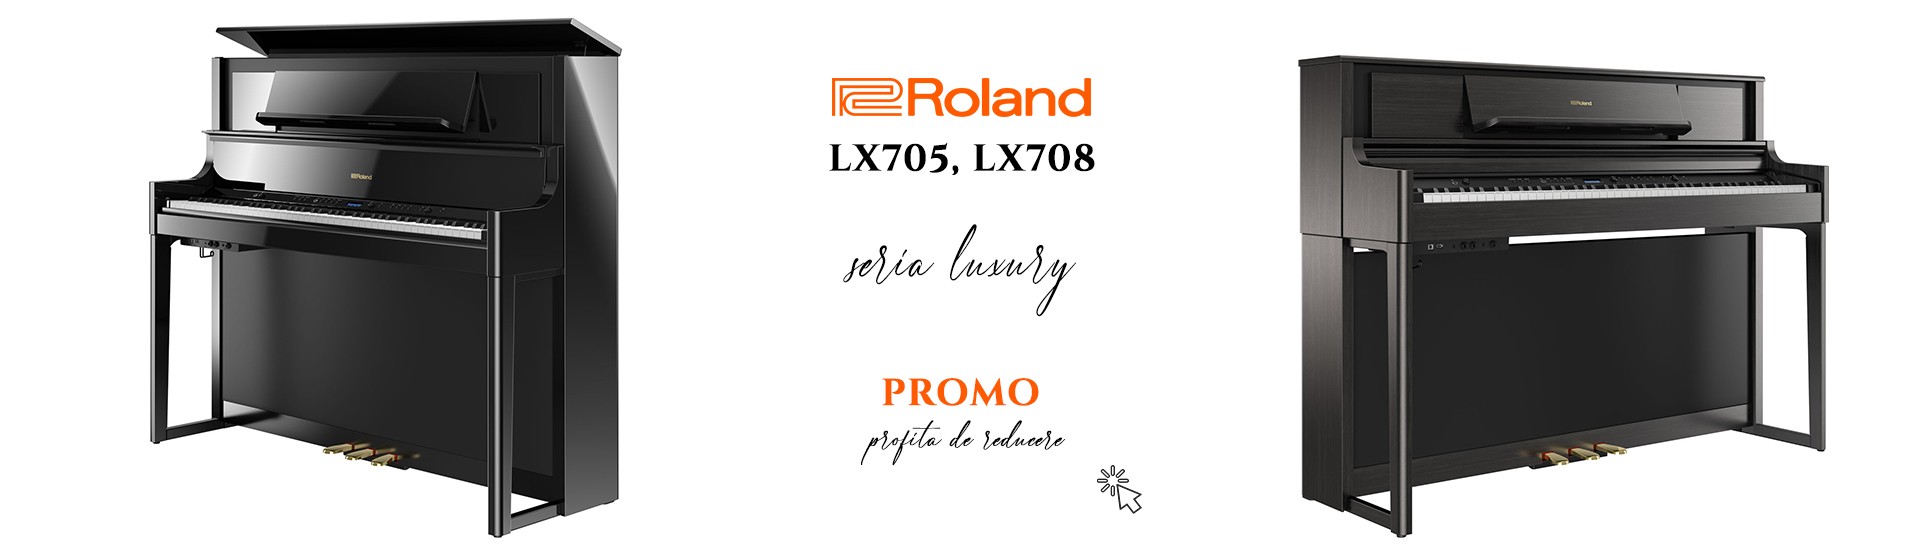 Pian Digital Roland LX708 LX705 PROMO